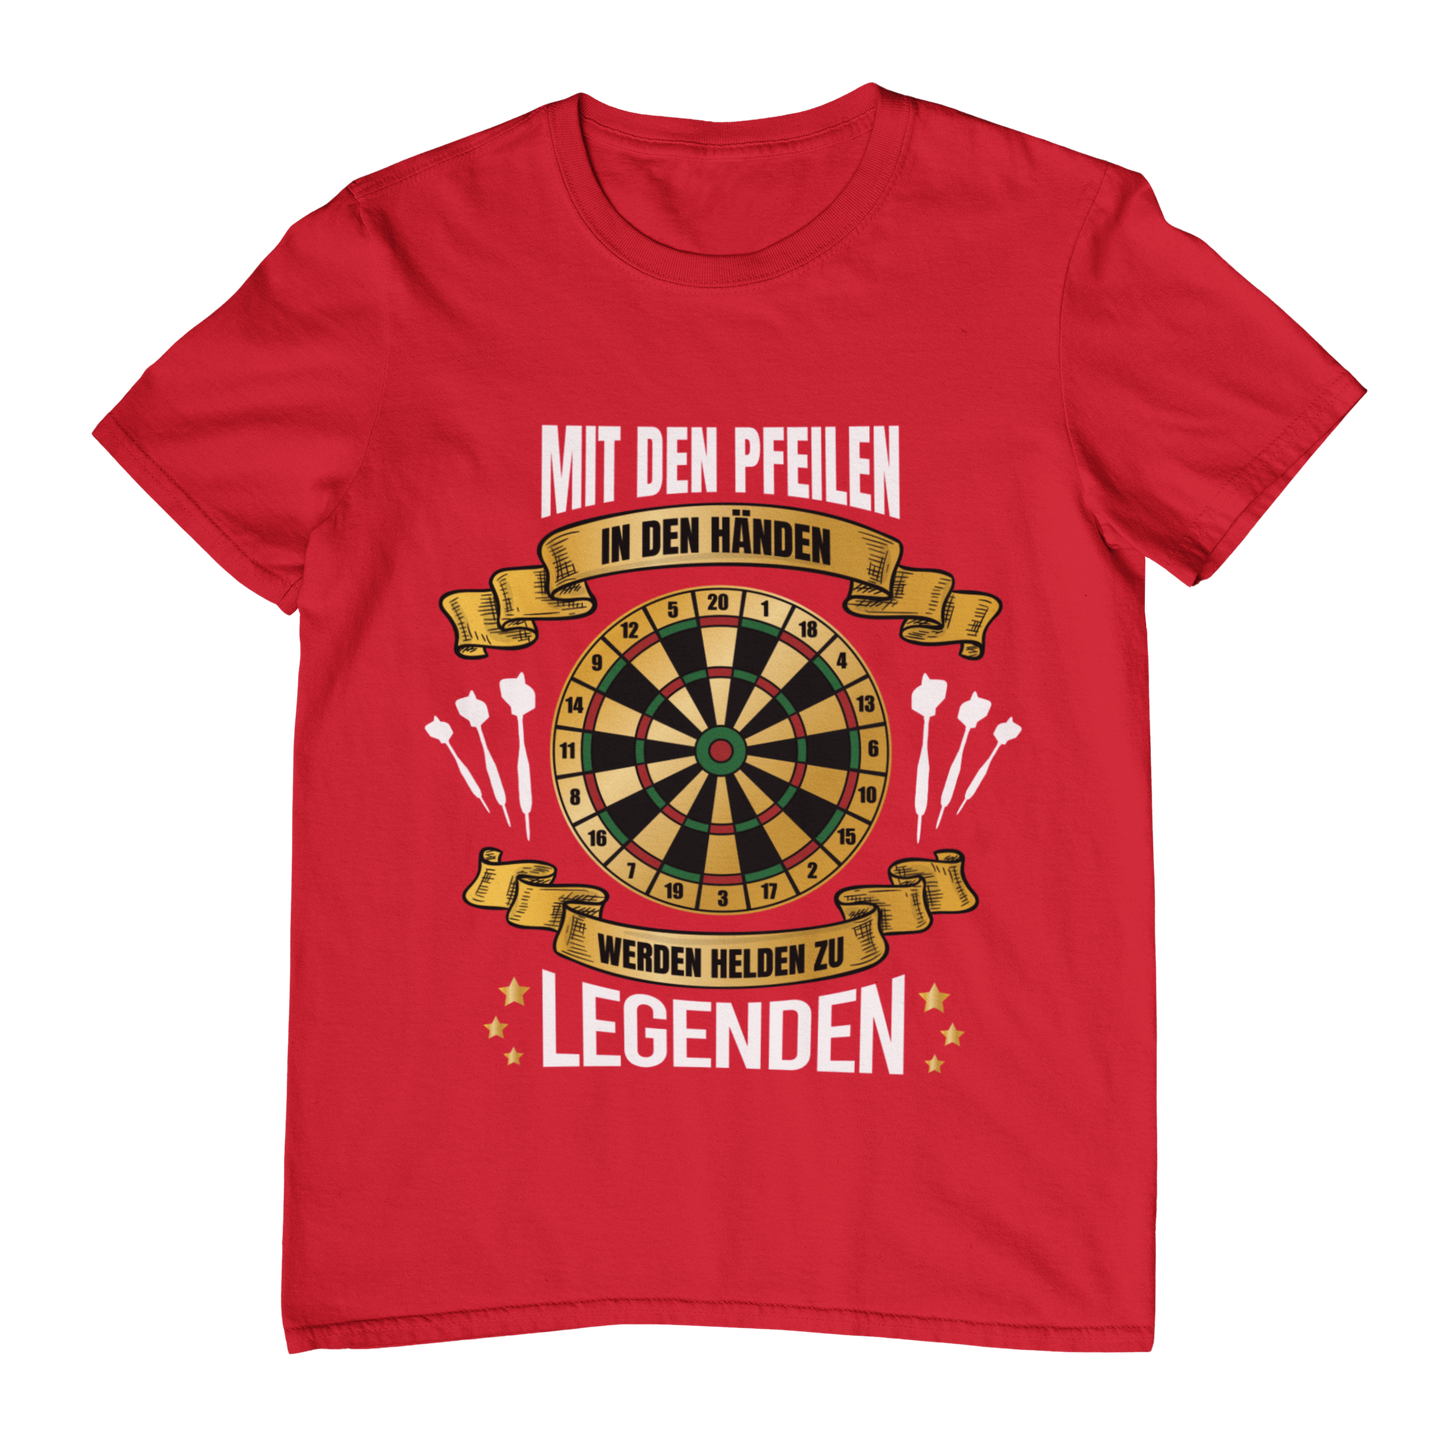 Legenden - Shirt